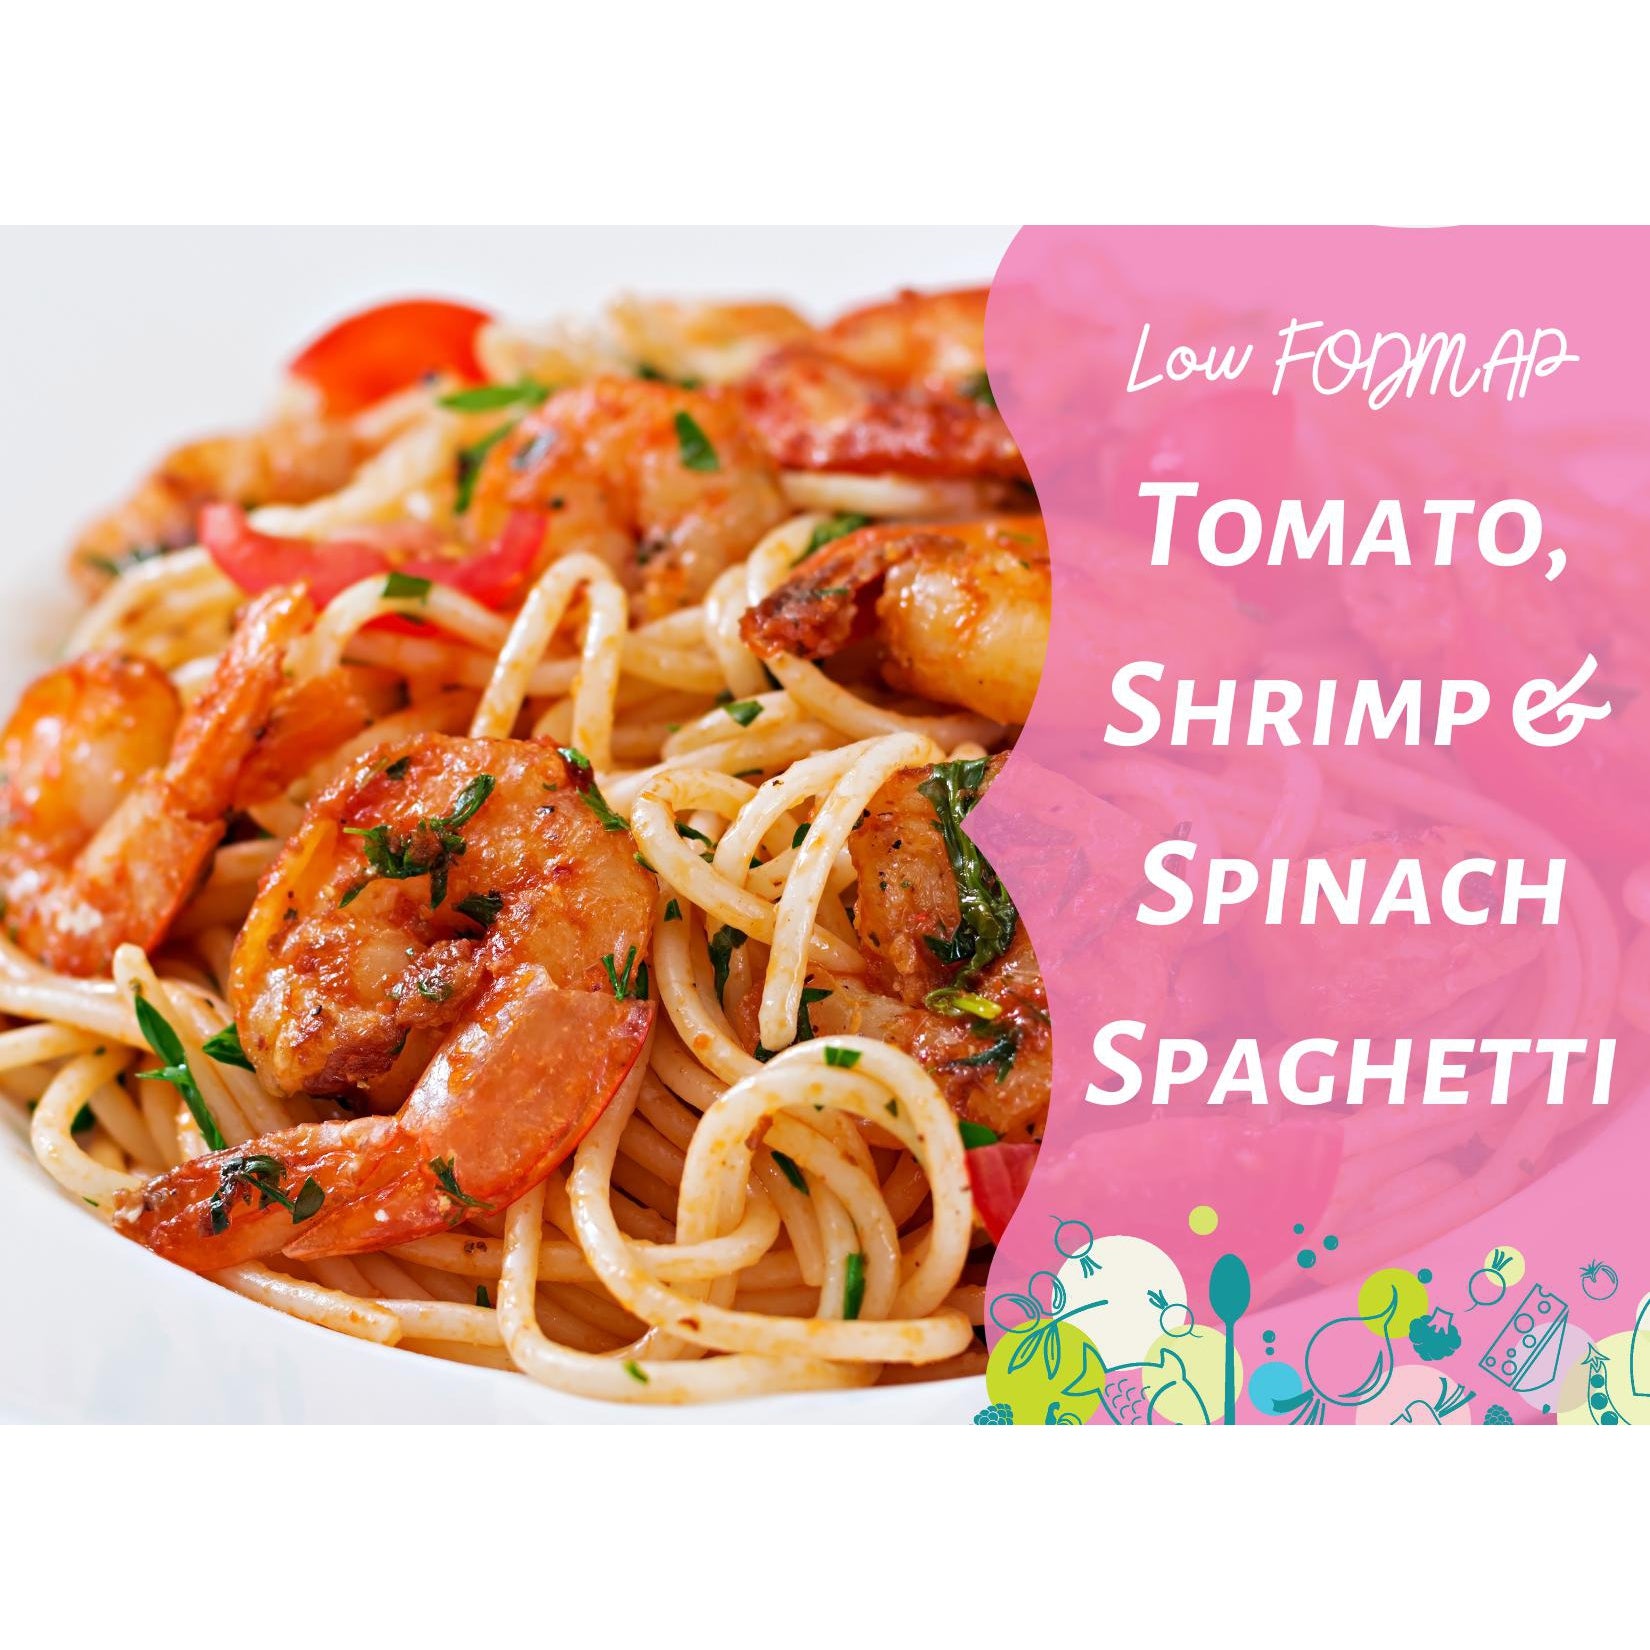 Low FODMAP Tomato, Shrimp & Spinach Spaghetti